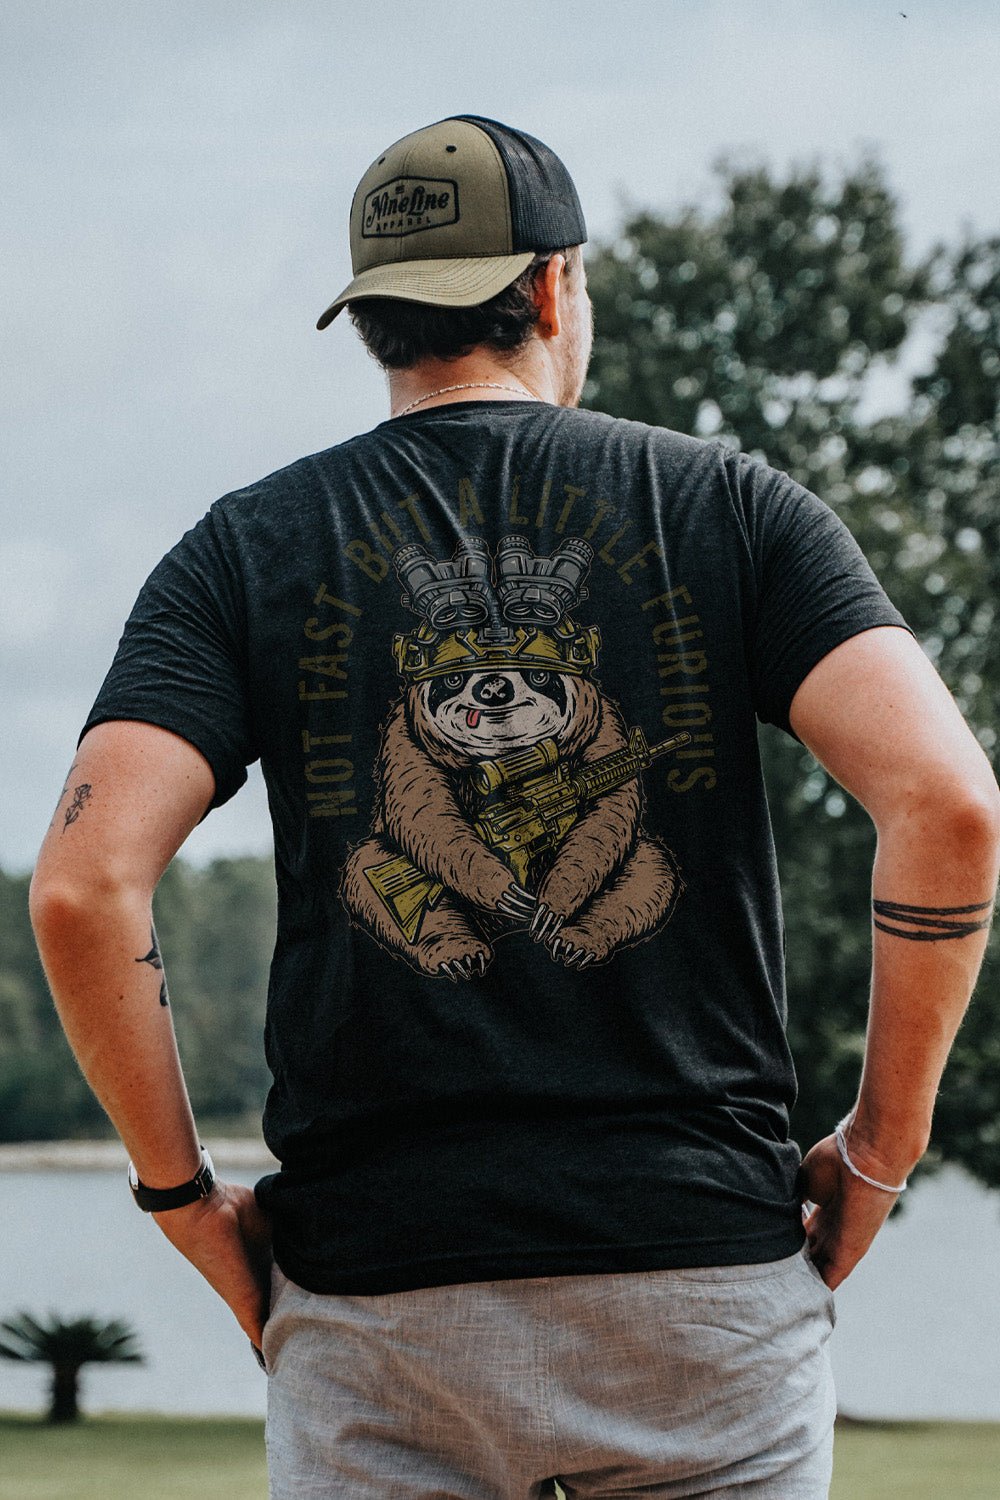 T-Shirt - Sloth